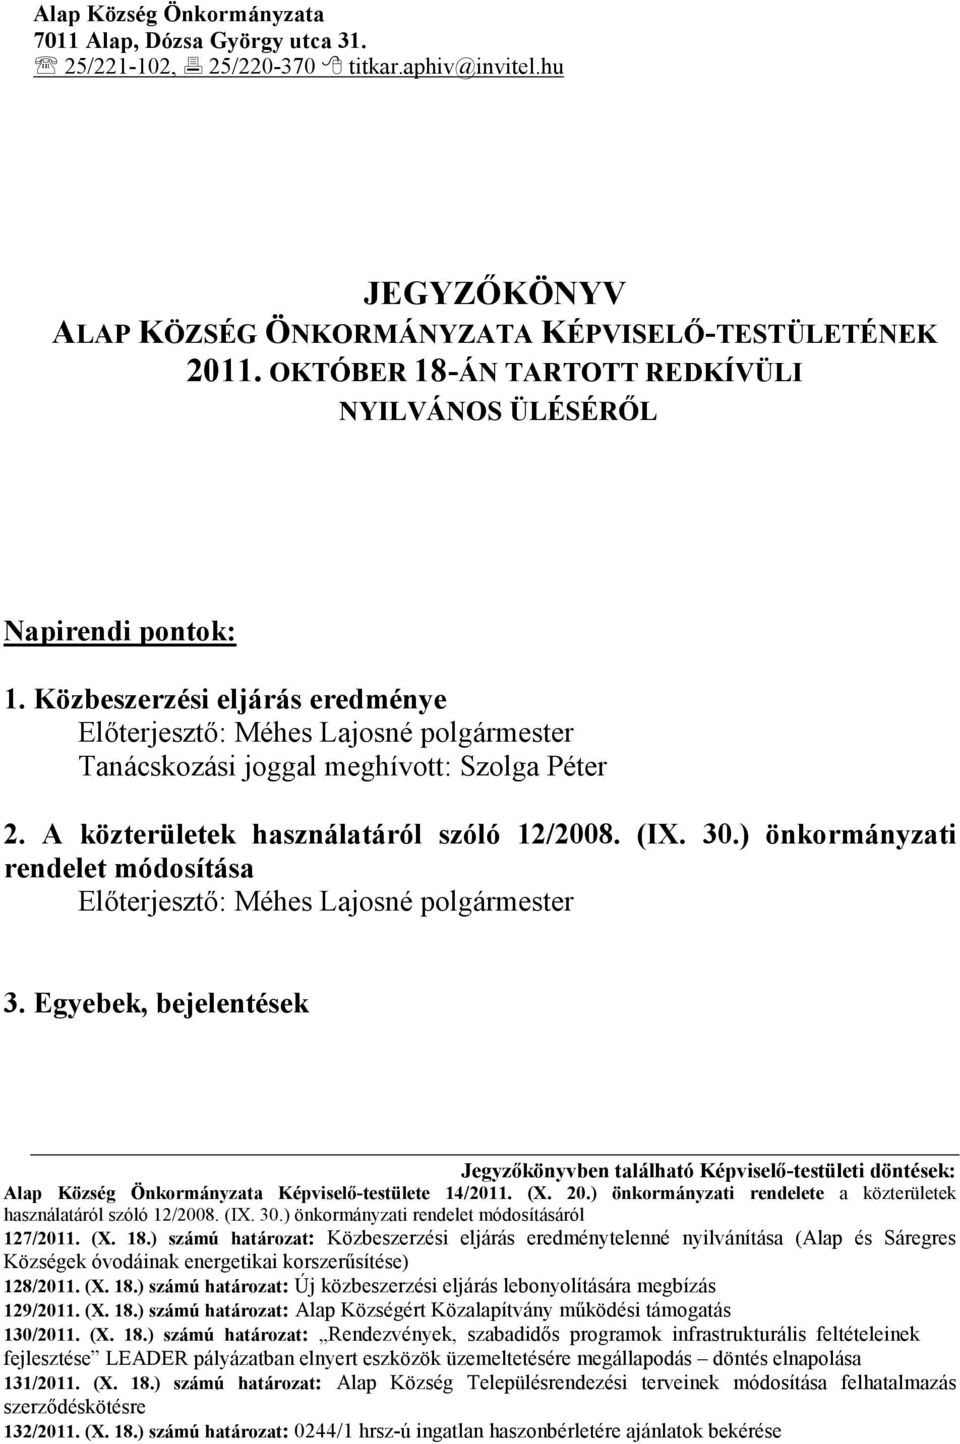 A közterületek használatáról szóló 12/2008. (IX. 30.) önkormányzati rendelet módosítása Elıterjesztı: Méhes Lajosné polgármester 3.